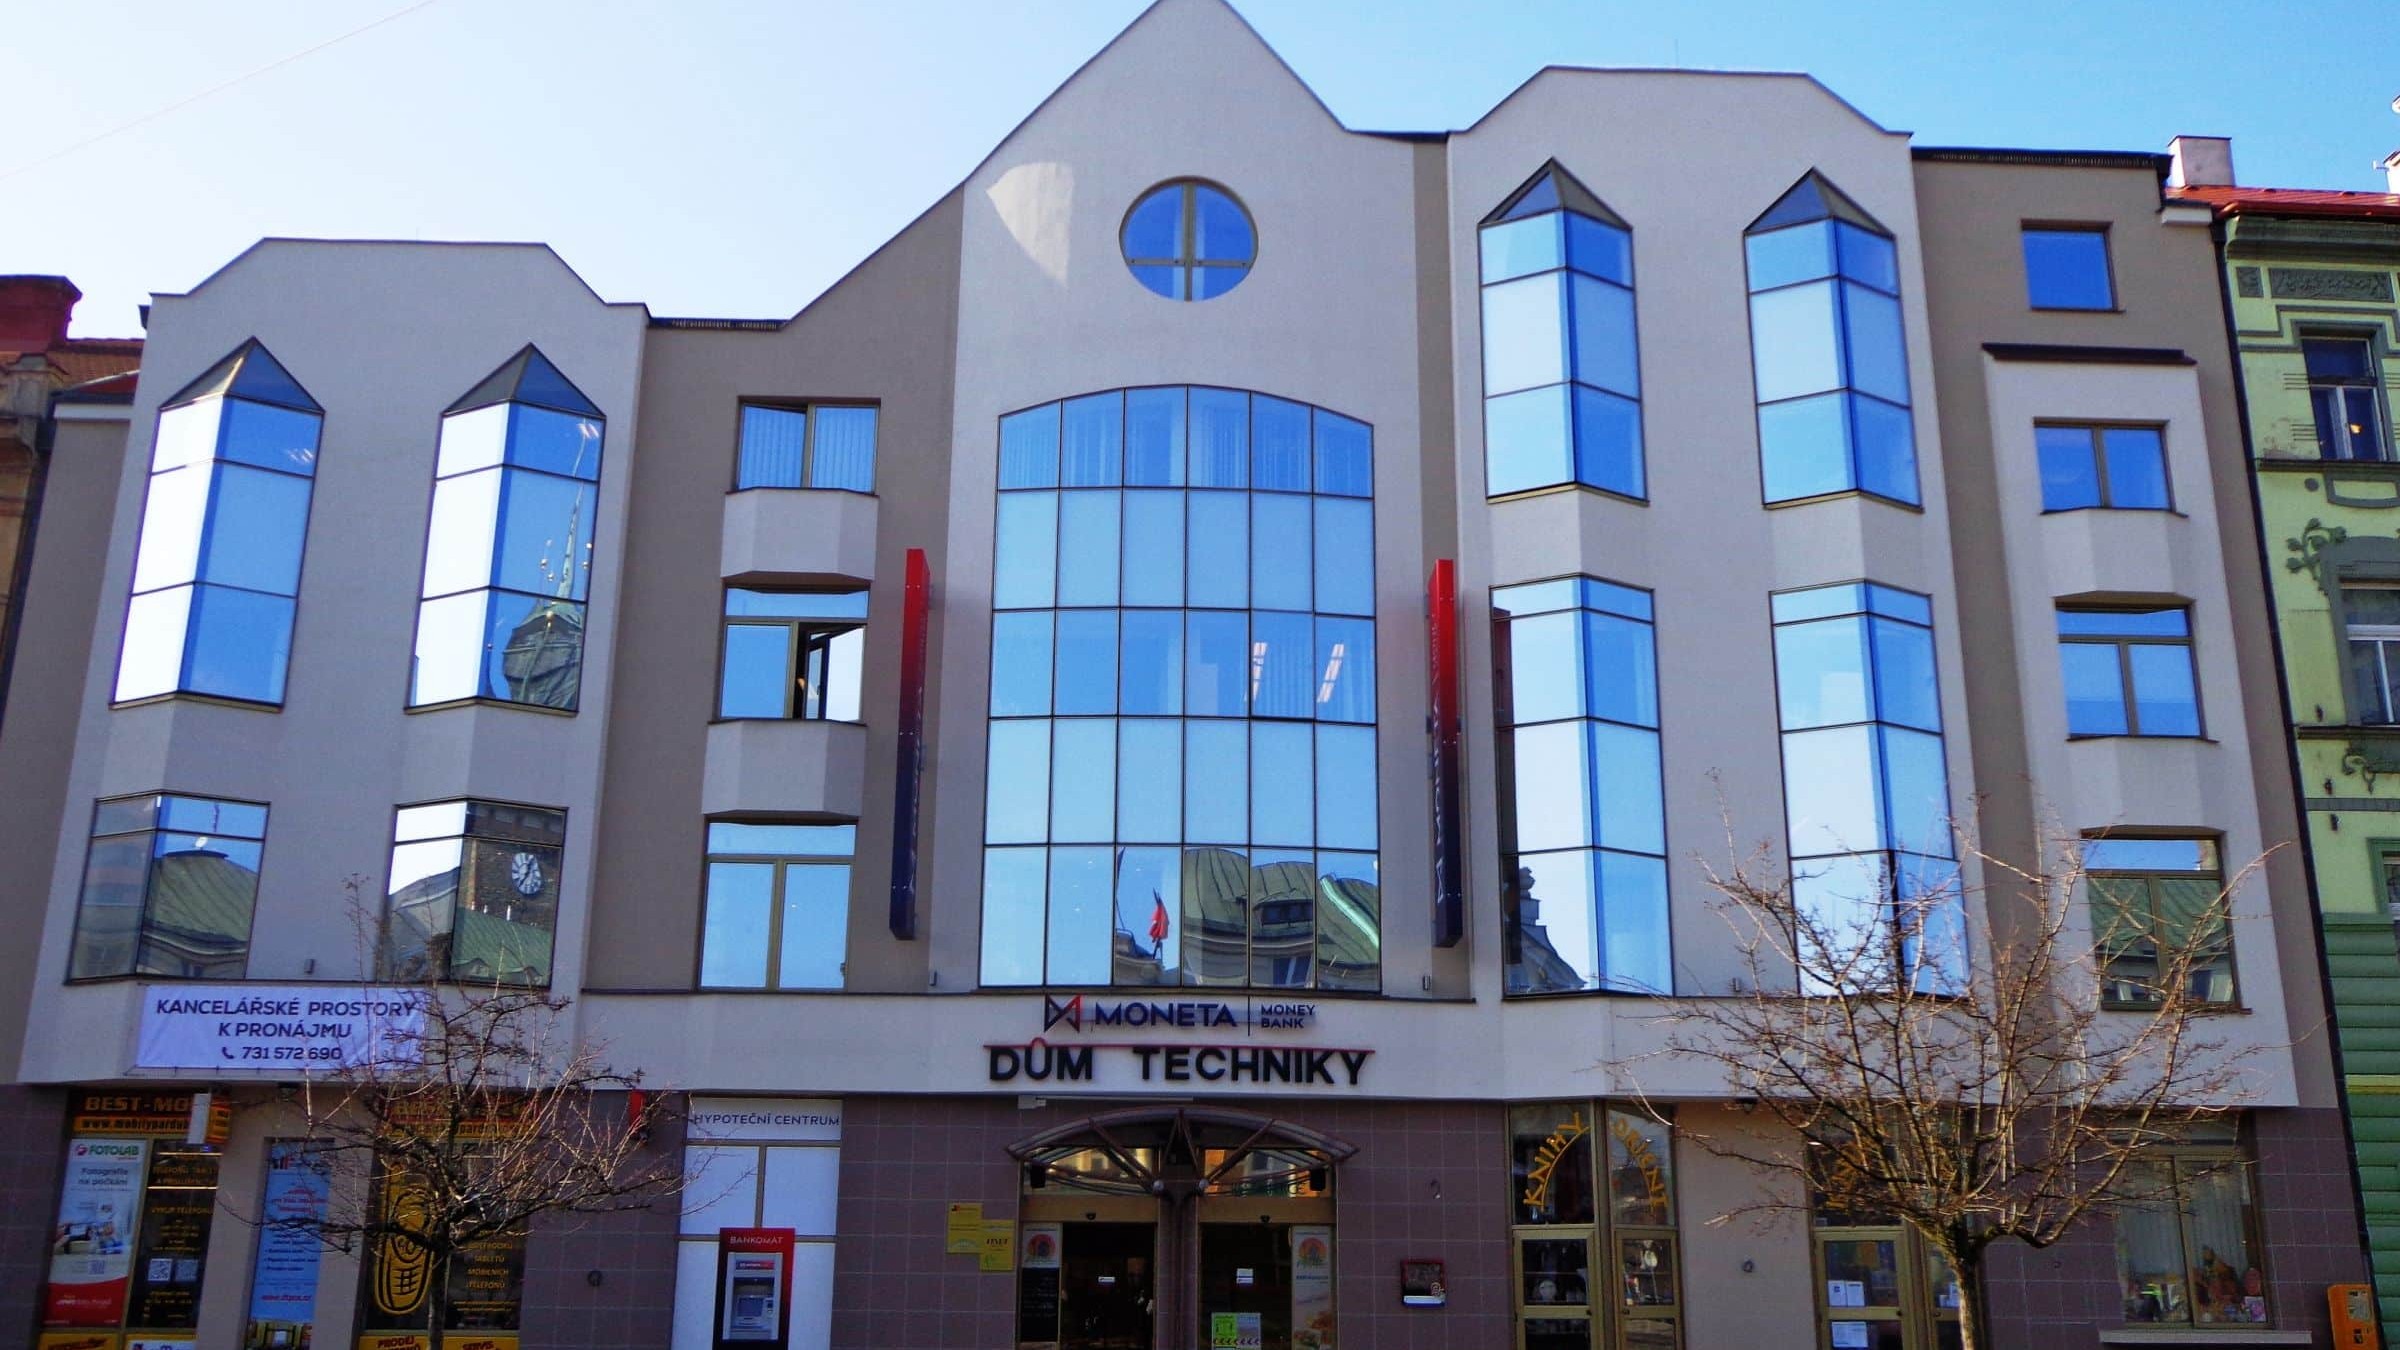 Dům techniky Pardubice